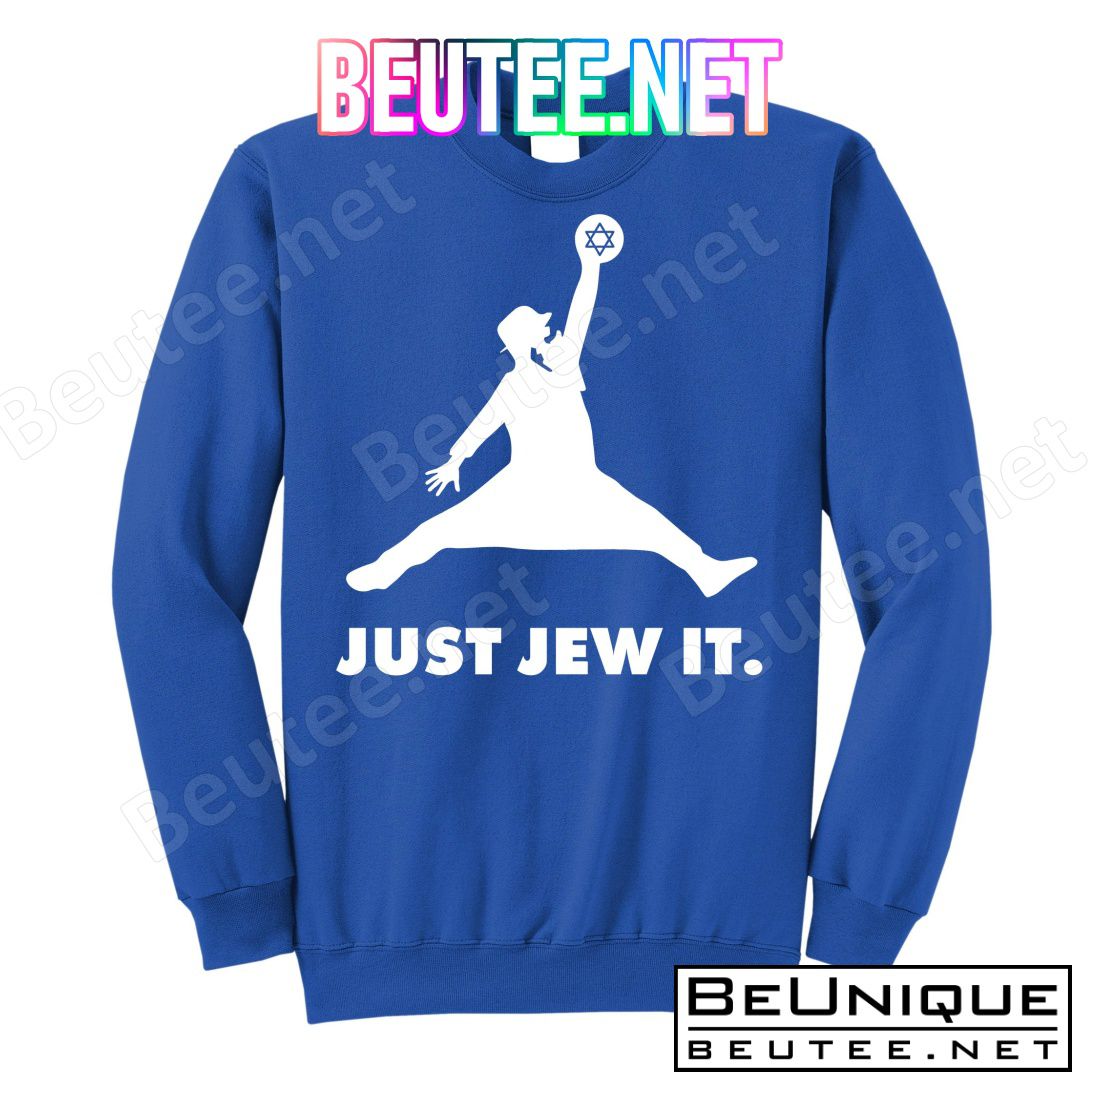 Just Jew It T-Shirts